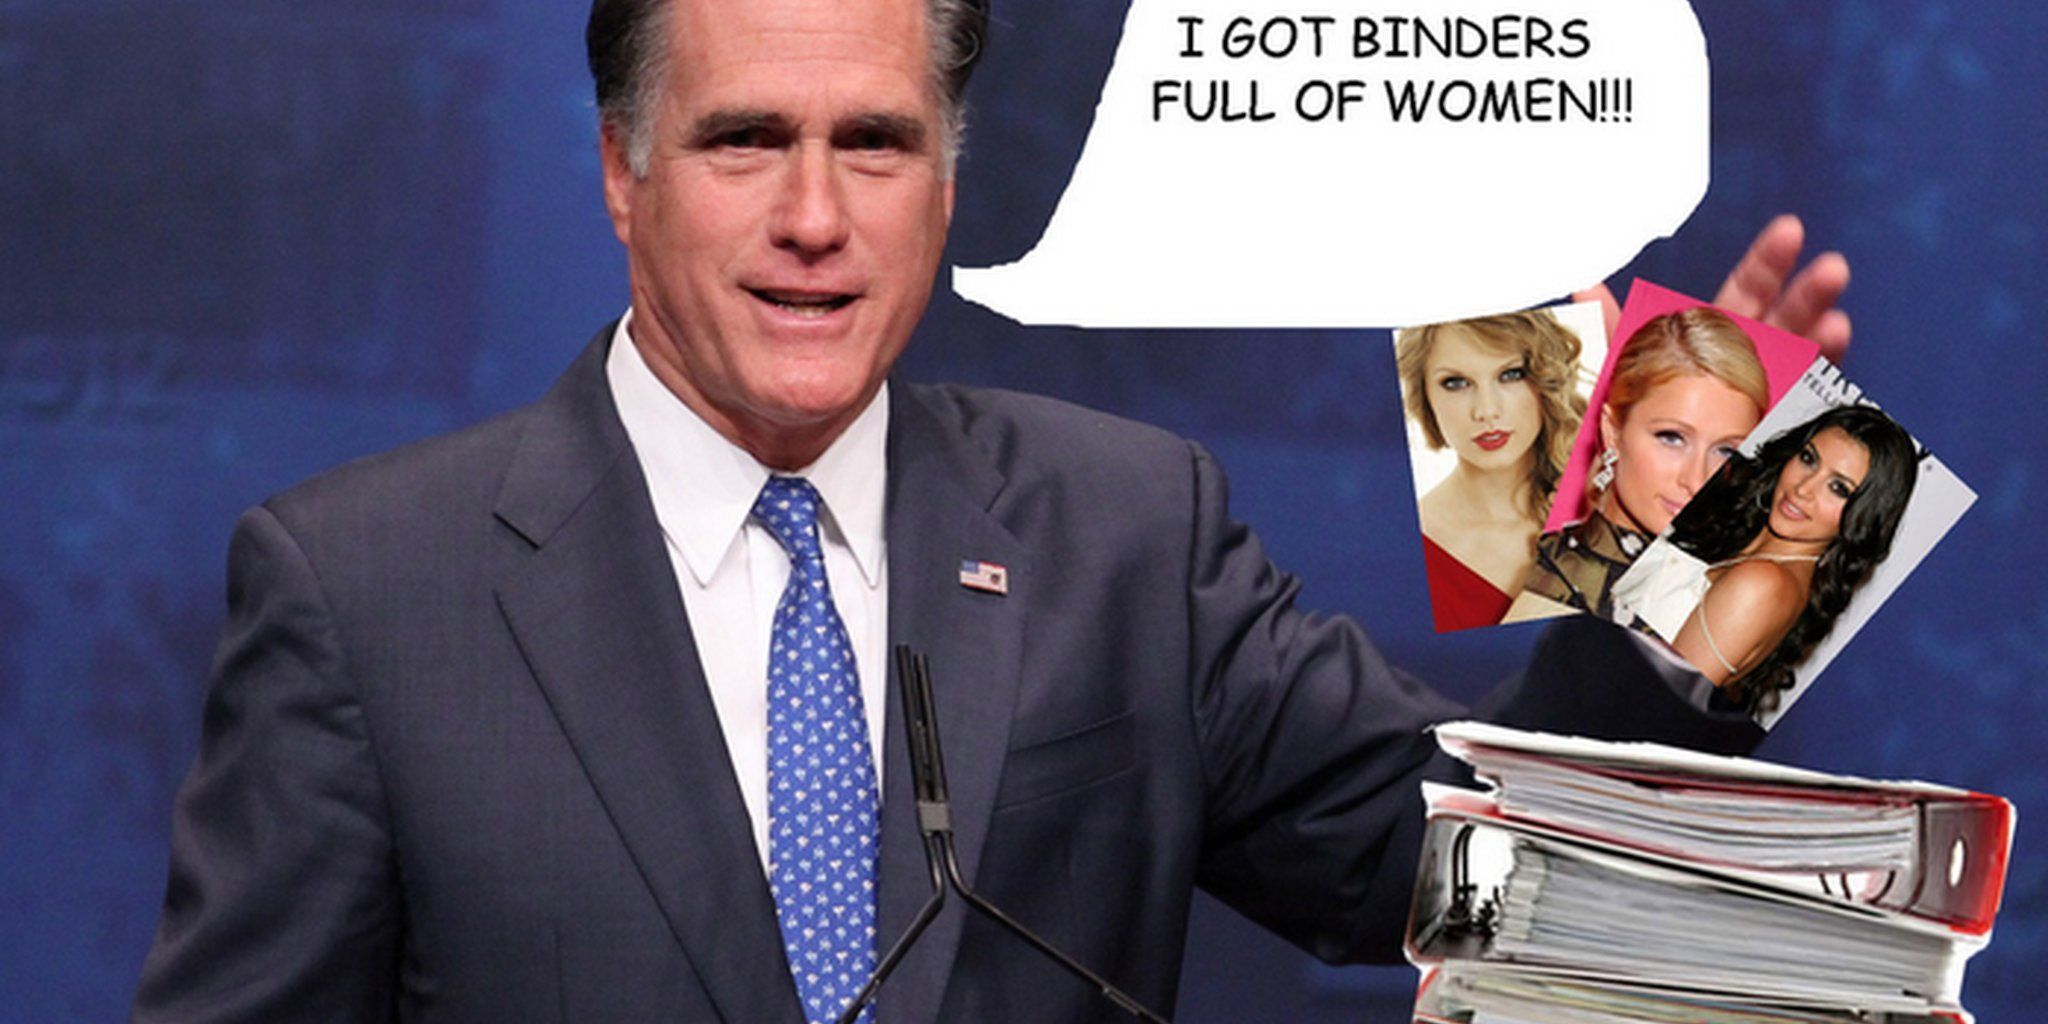 Thunder reccomend Romney binder jokes